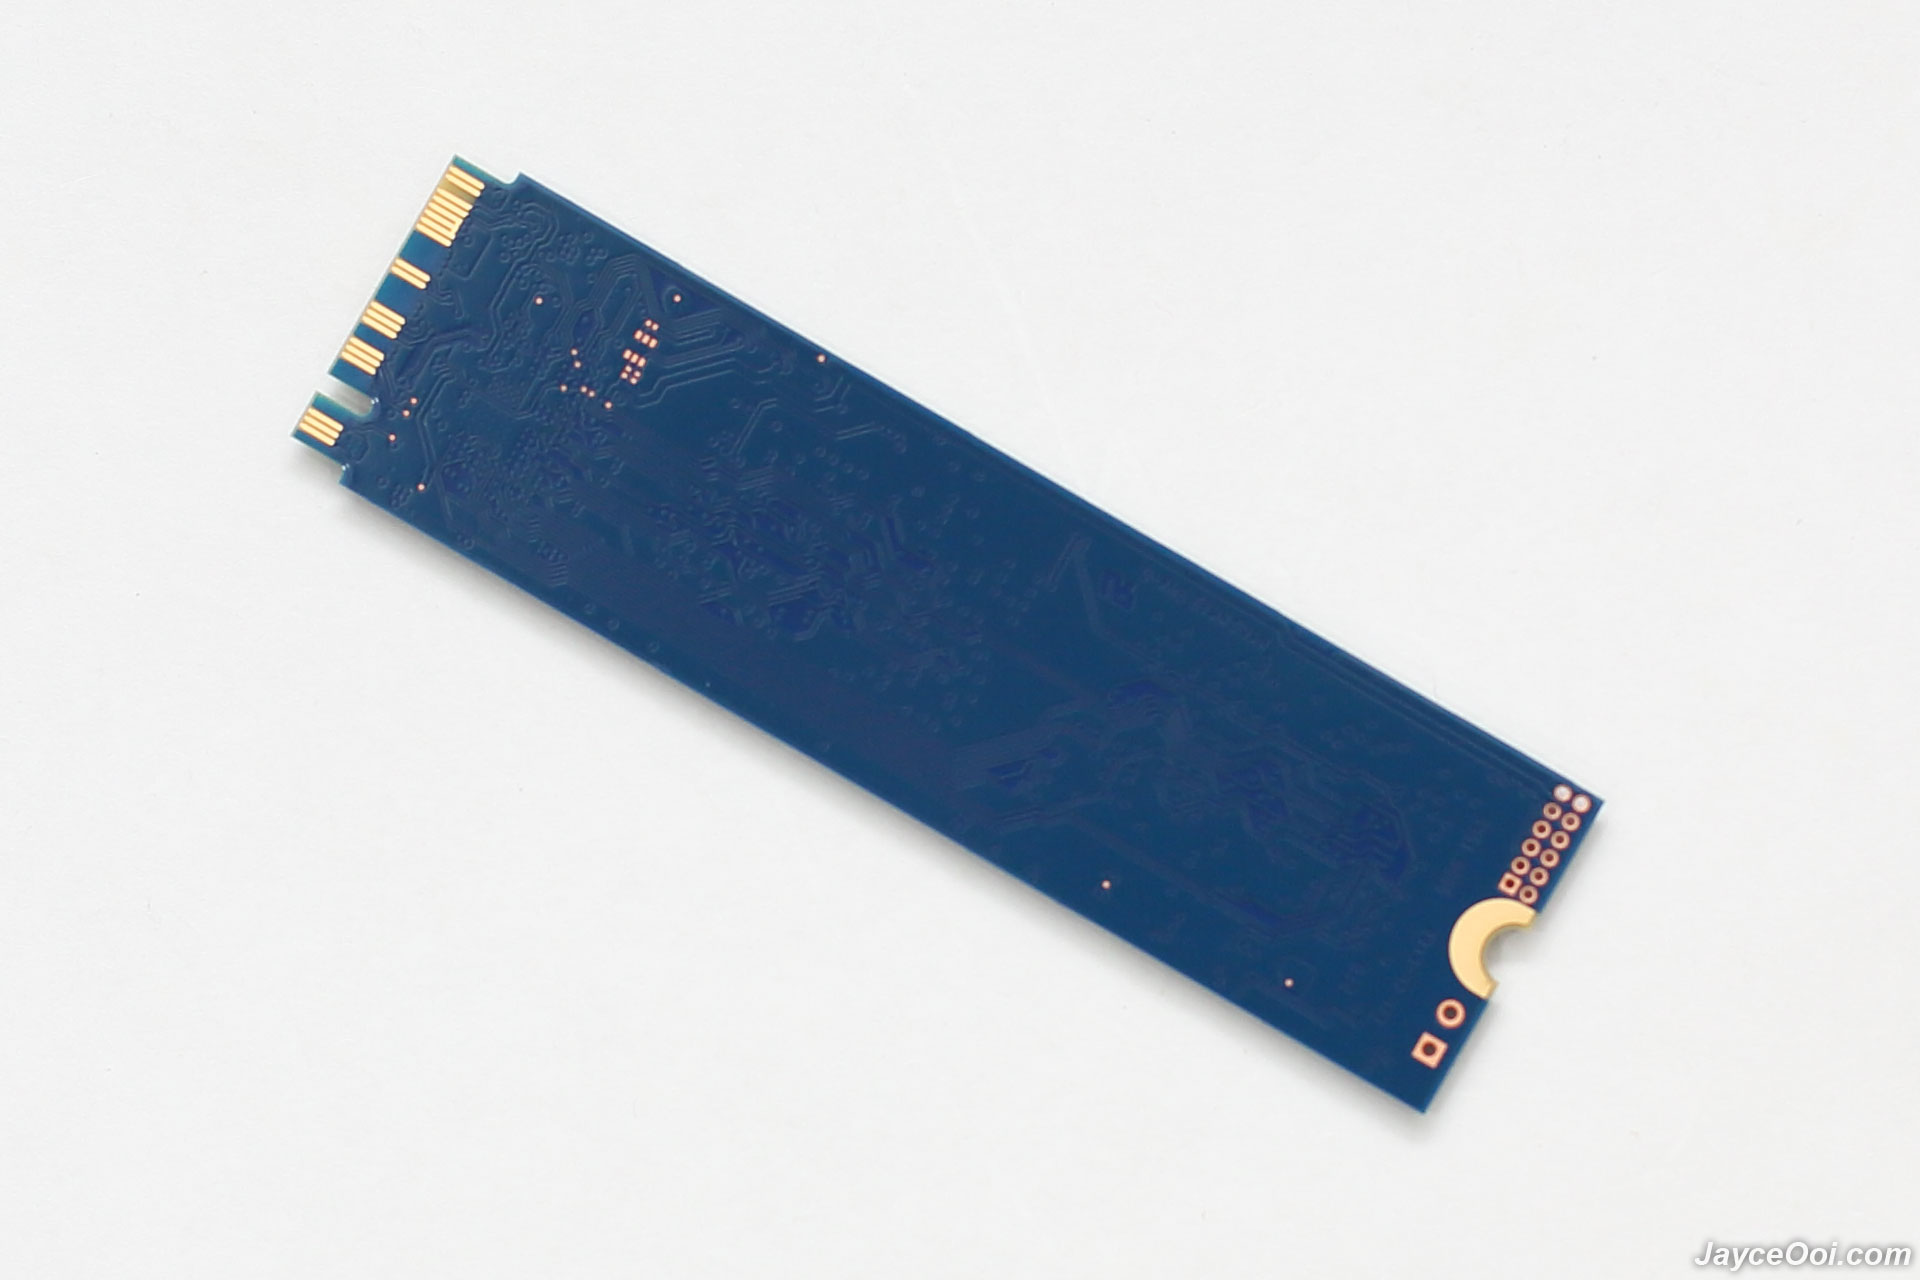 2TB NV2 SSD PCIe NVMe Gen 4.0